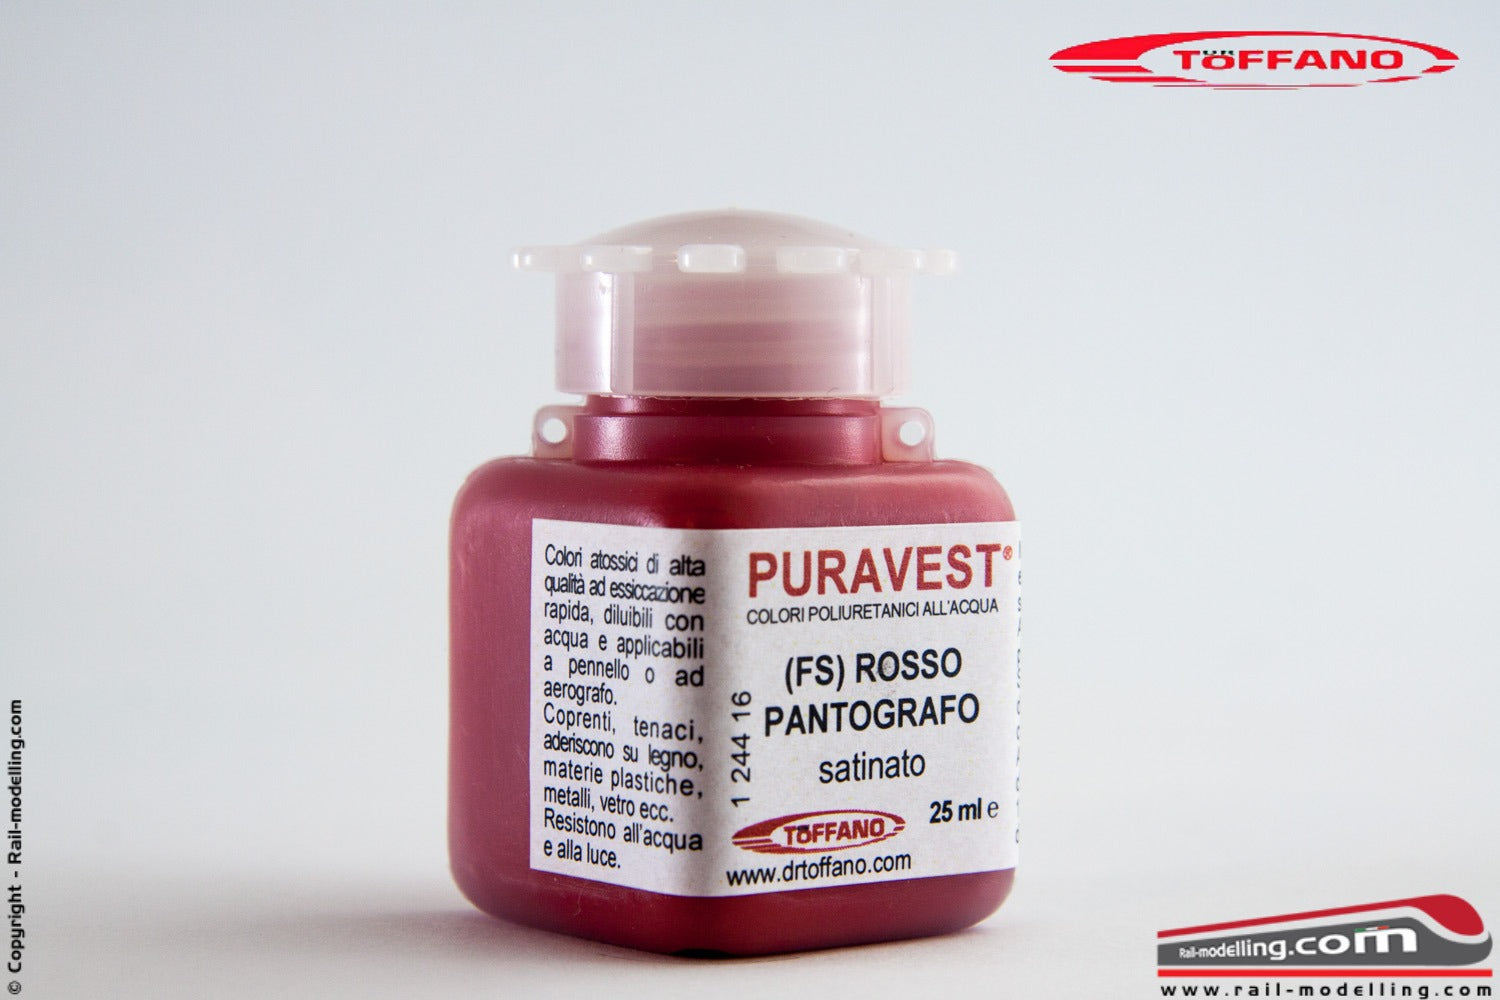 DR TOFFANO - PURAVEST 12441412 Colore poliuretanico all'acqua ROSSO PANTOGRAFO (FS) satinato da 25ml